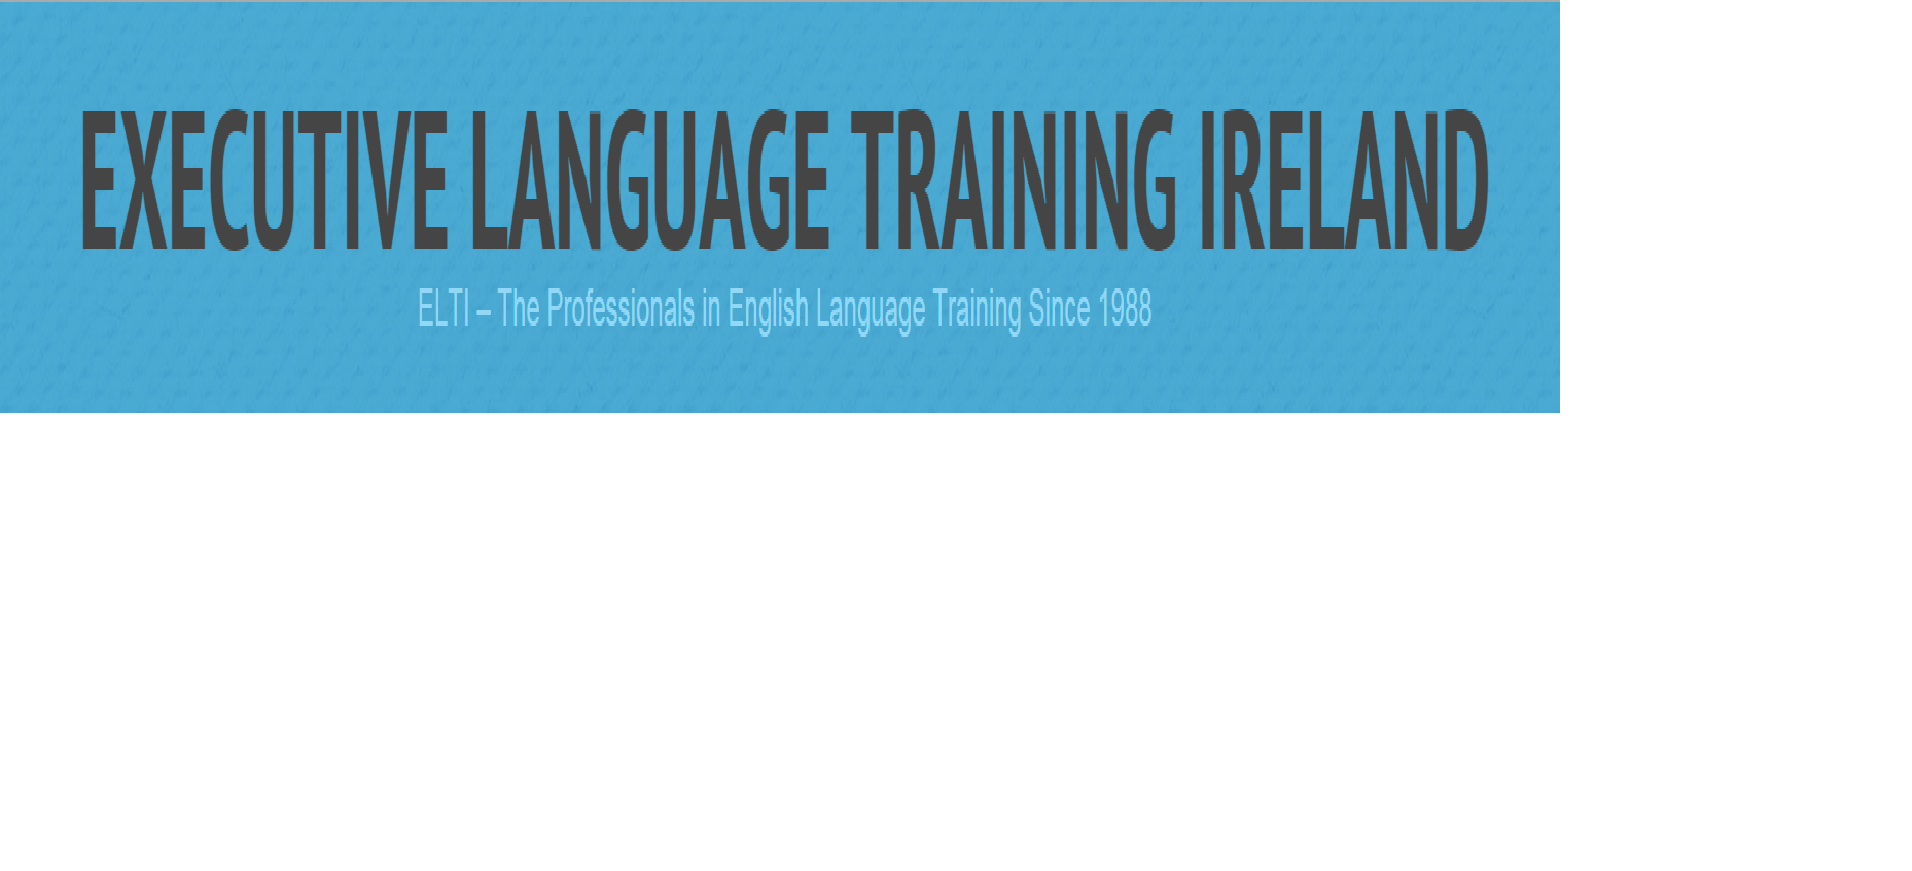 Executive Language Training Ireland